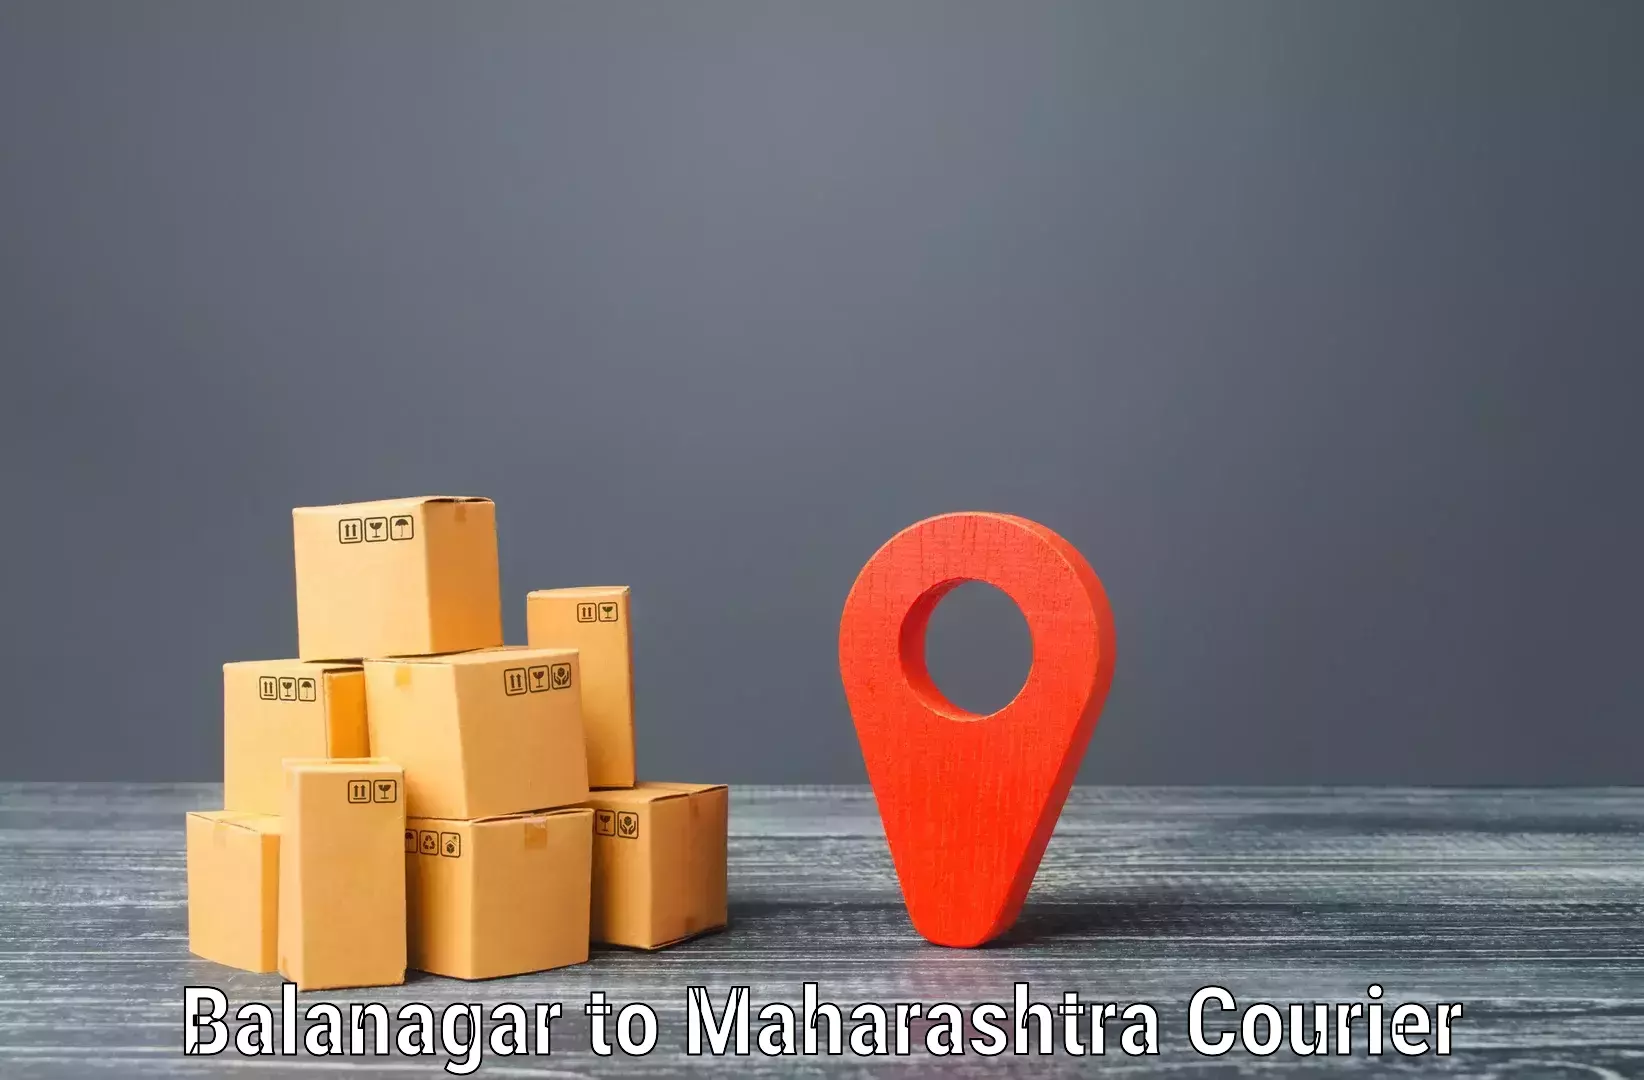 Urgent courier needs in Balanagar to Gangakher